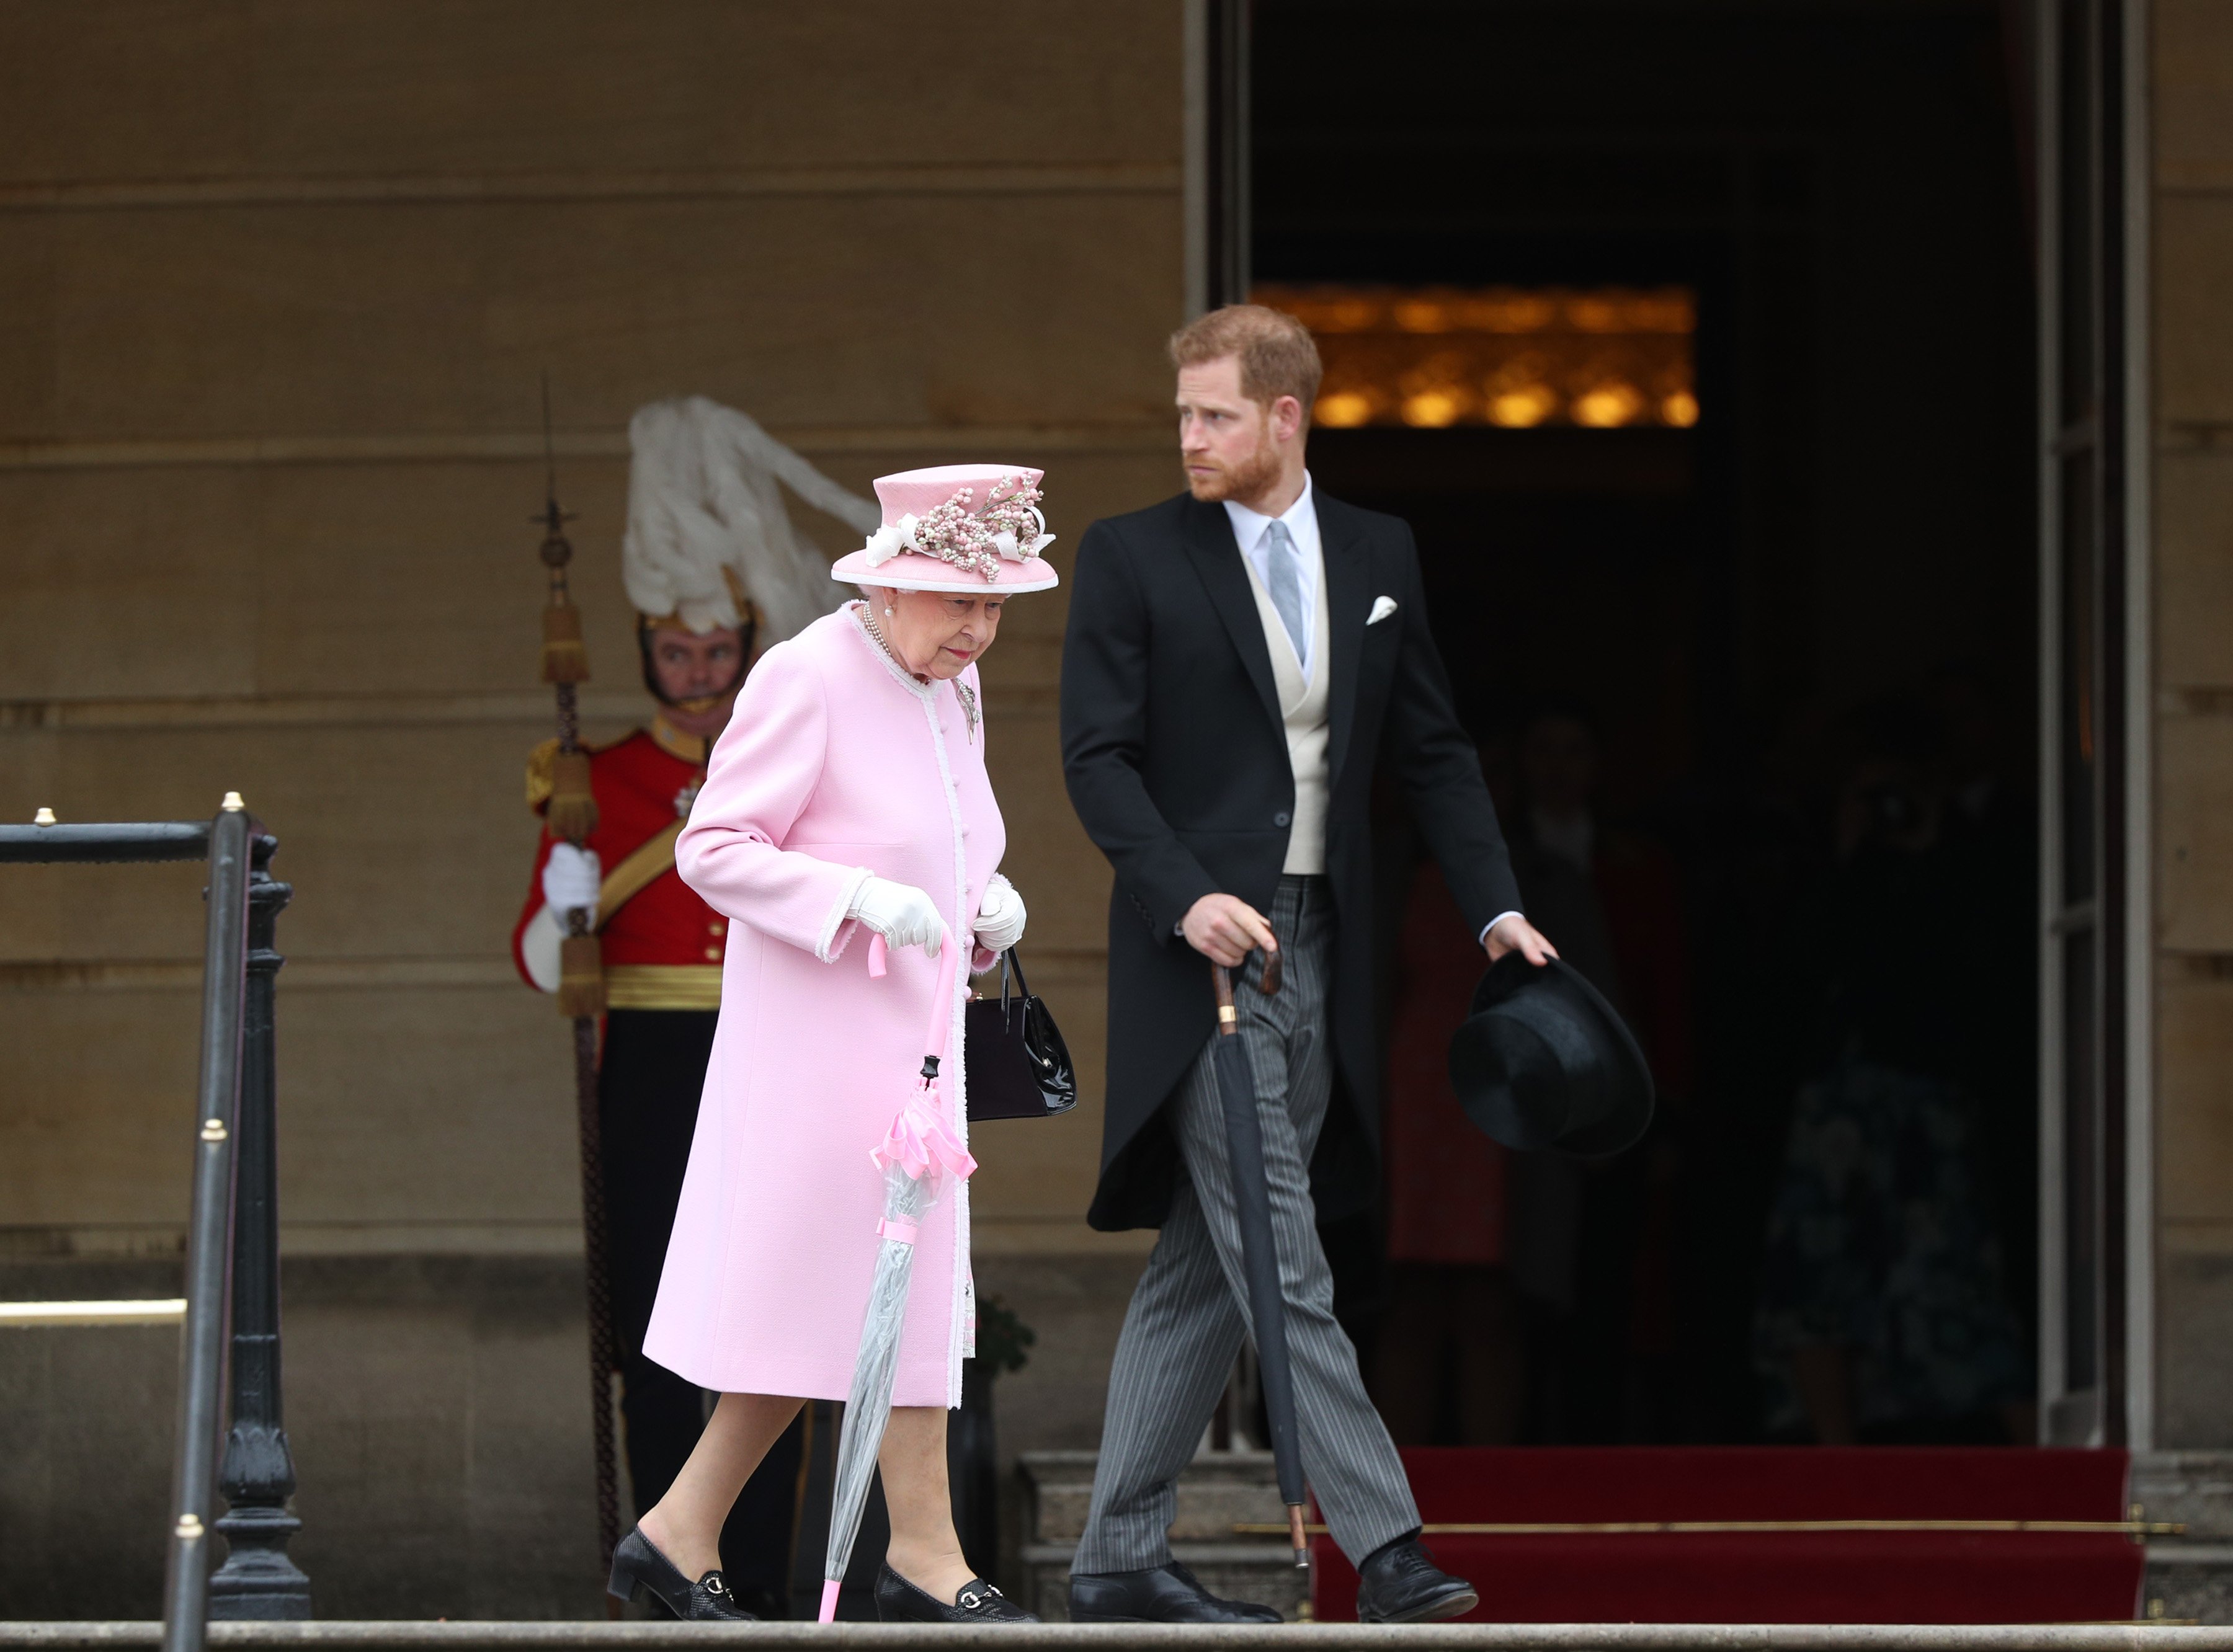 La reina Elizabeth II y el príncipe Harry, duque de Sussex, en la Royal Garden Party en el palacio de Buckingham, el 29 de mayo de 2019 en Londres, Inglaterra. | Foto: Getty Images